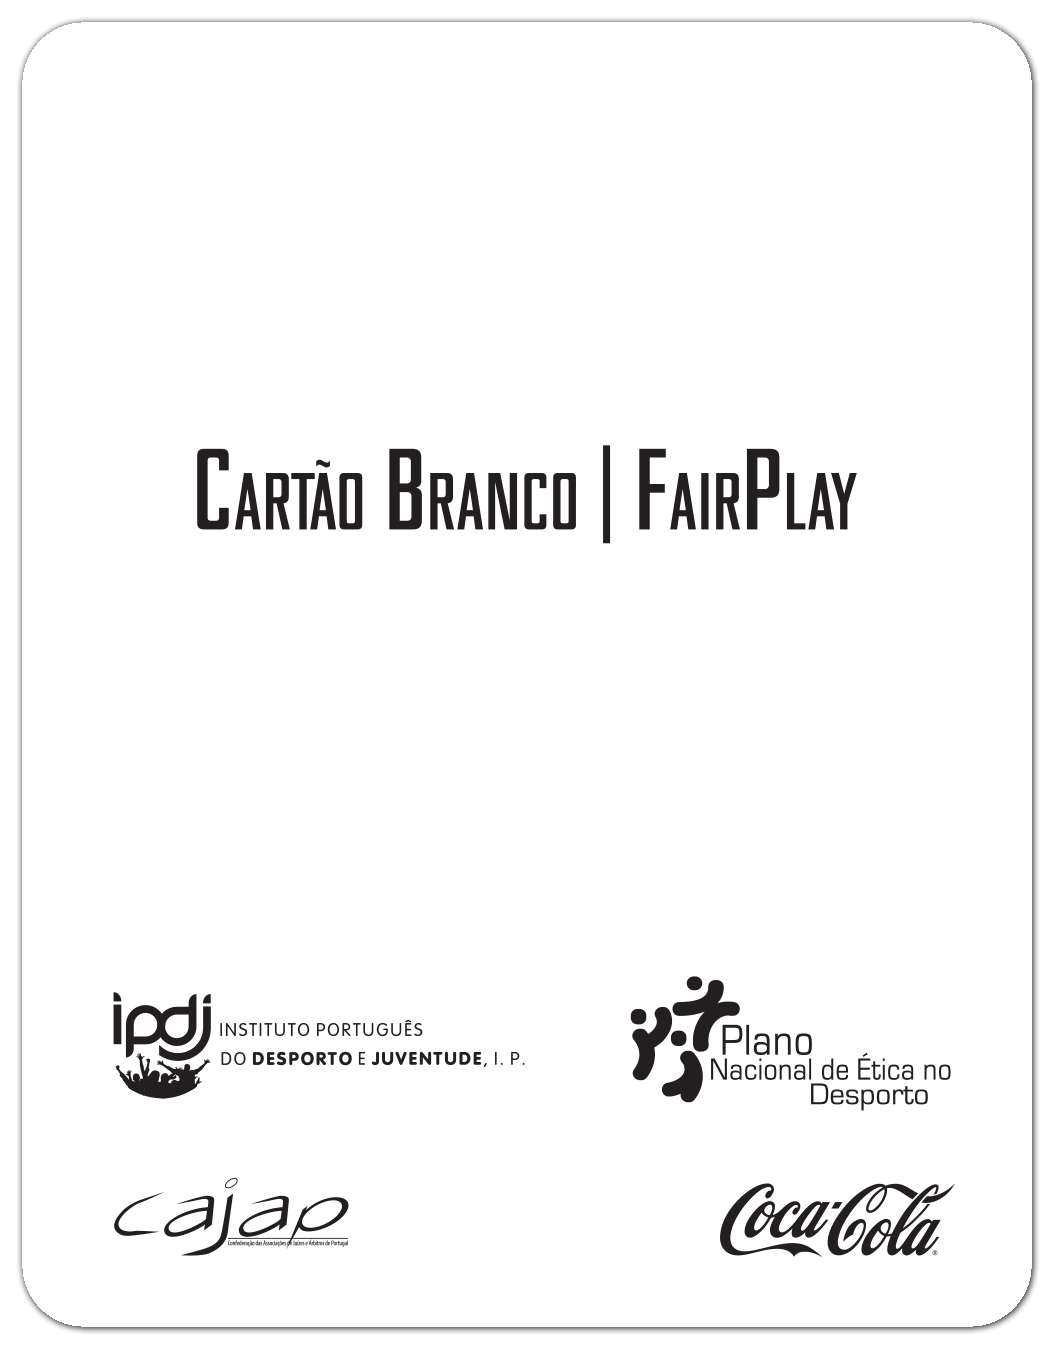 Cartão Branco - Fair Play